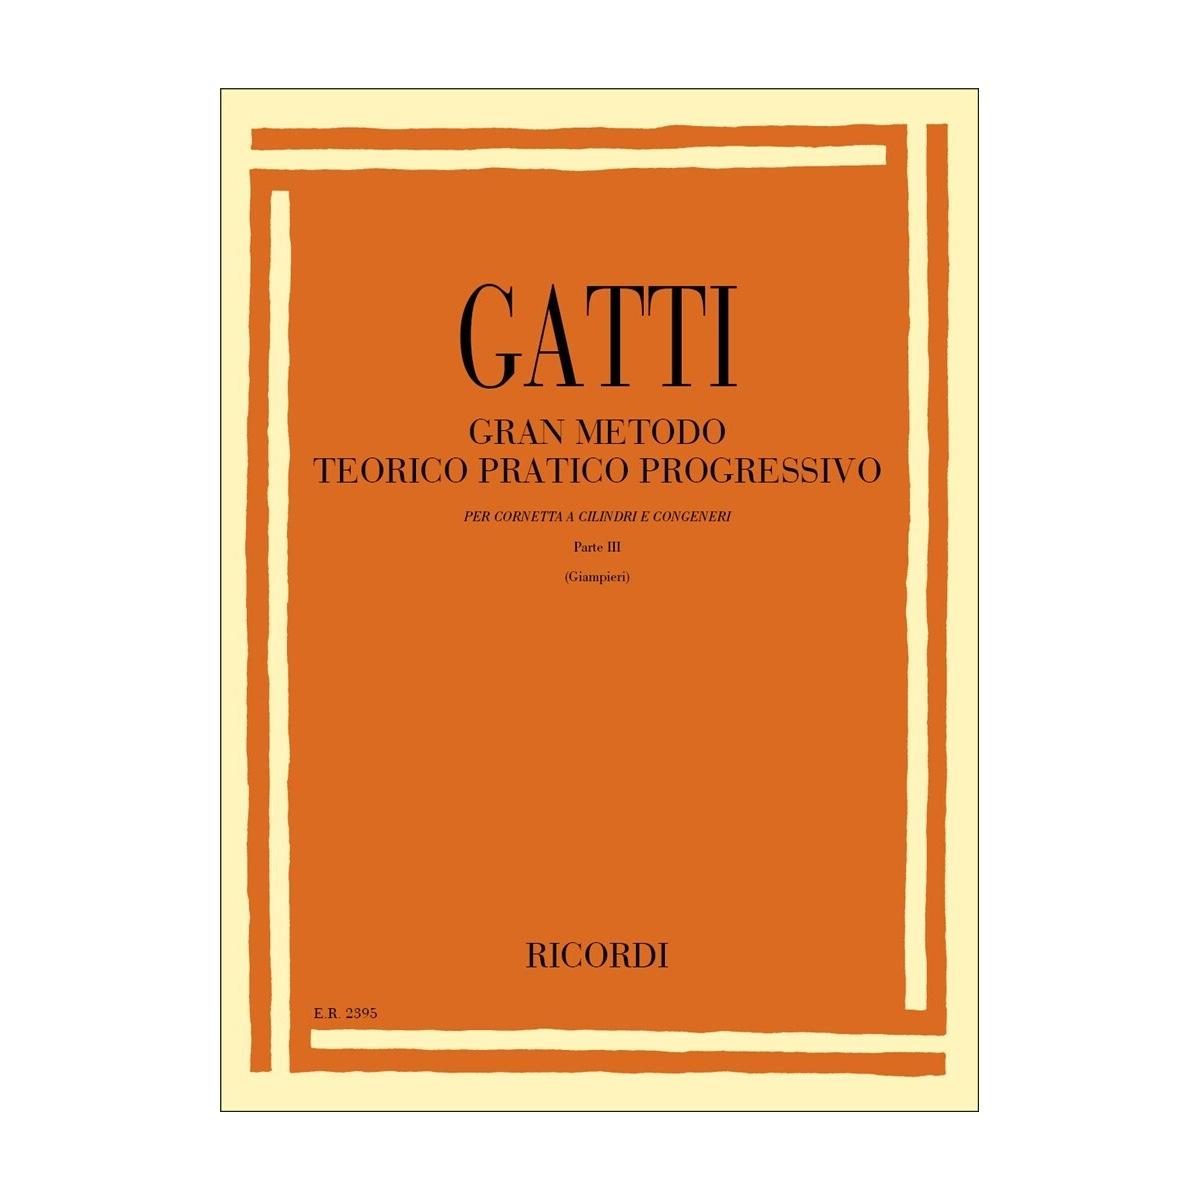 Gatti gran metodo teorico pratico progressivo Parte III<br />Per cornetta a cilindri, tromba e congeneri